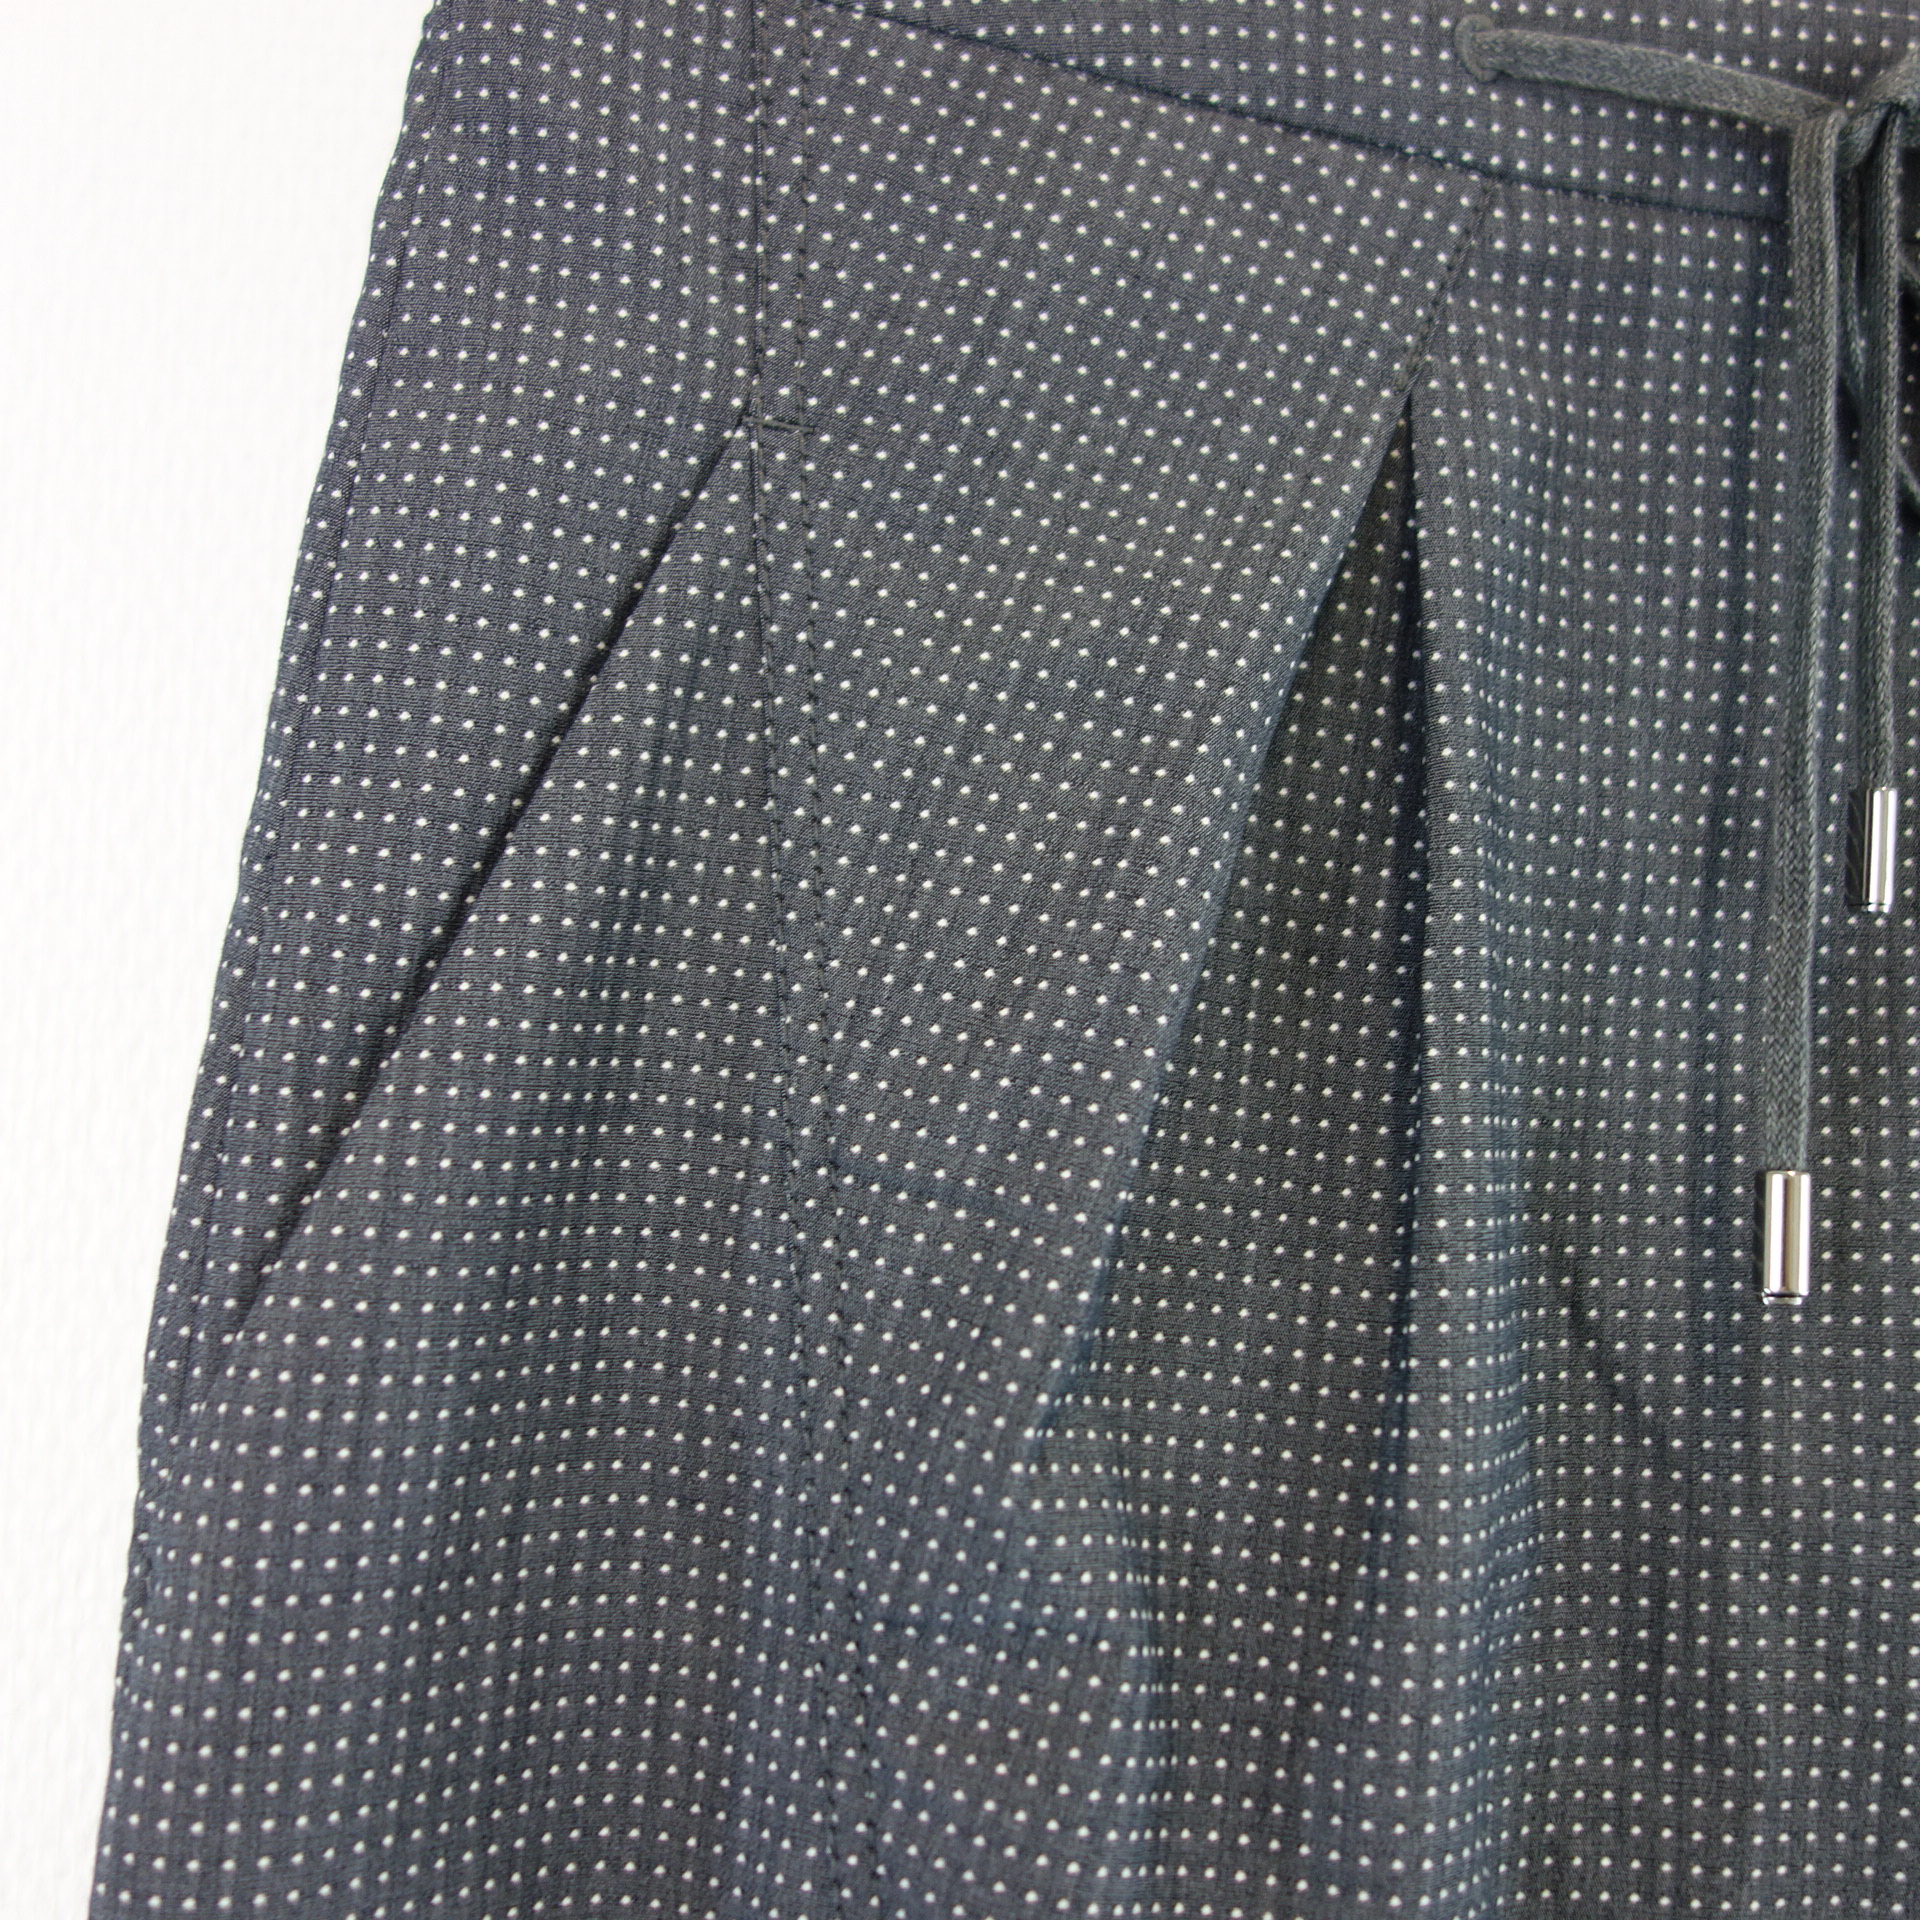 SPOON GOLF Rock mit Shorts Sport Grau Weiße Punkte Größe W29 Taschen